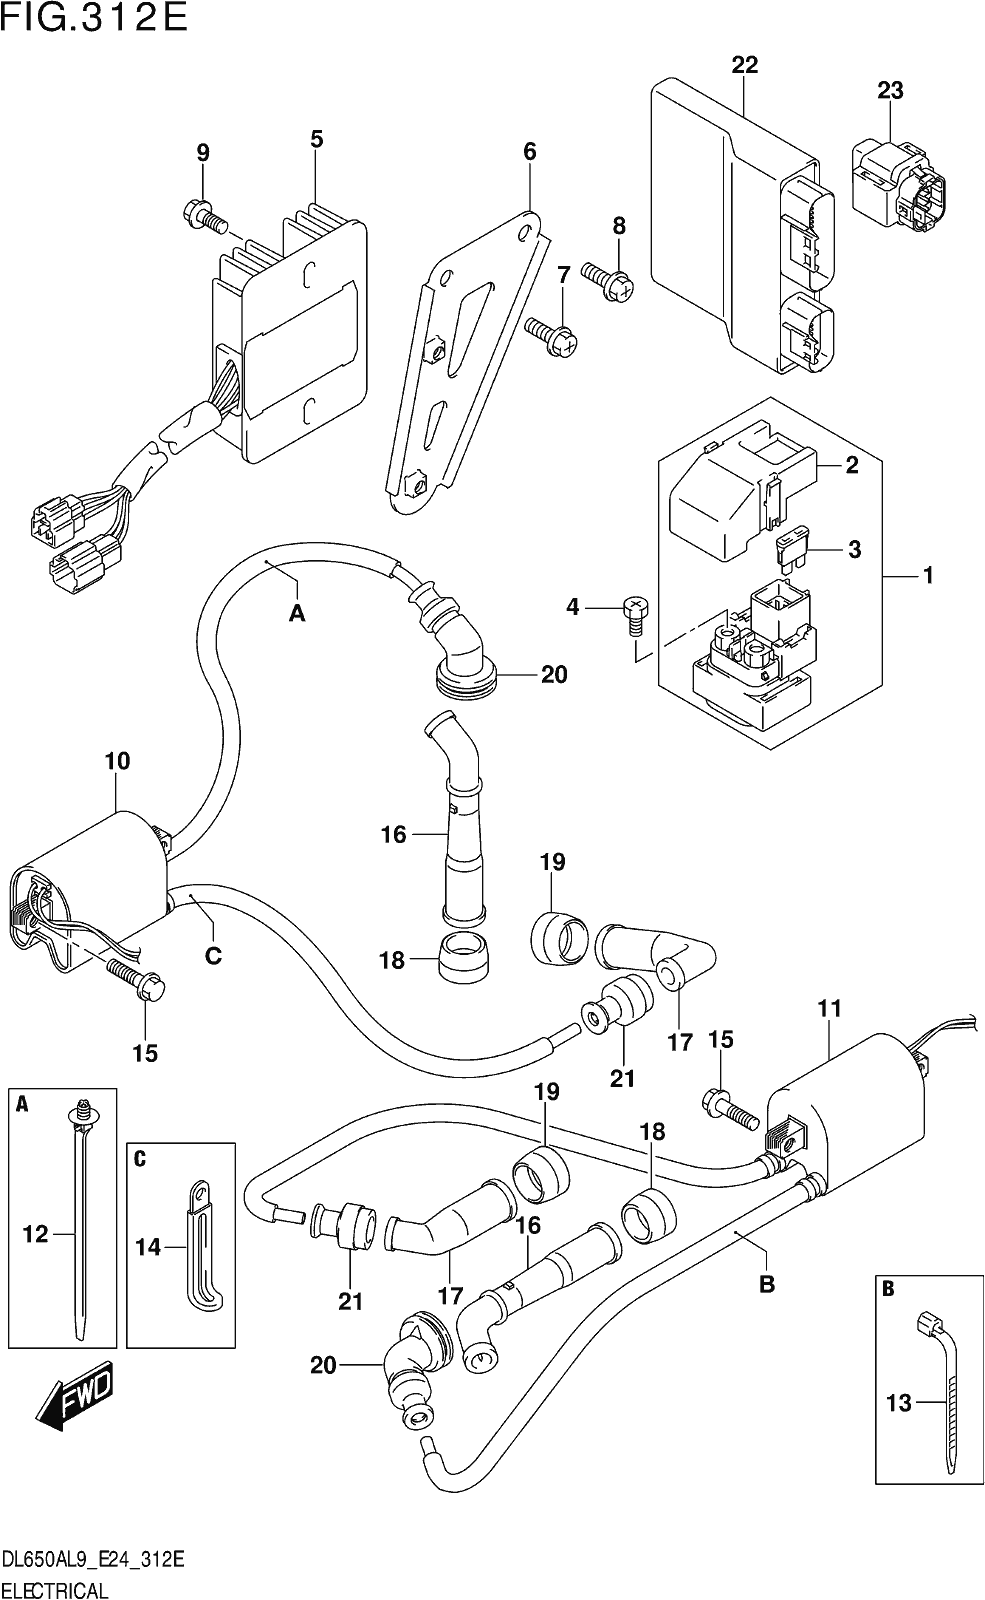 Fig.312e Electrical (dl650xaue,dl650aue)